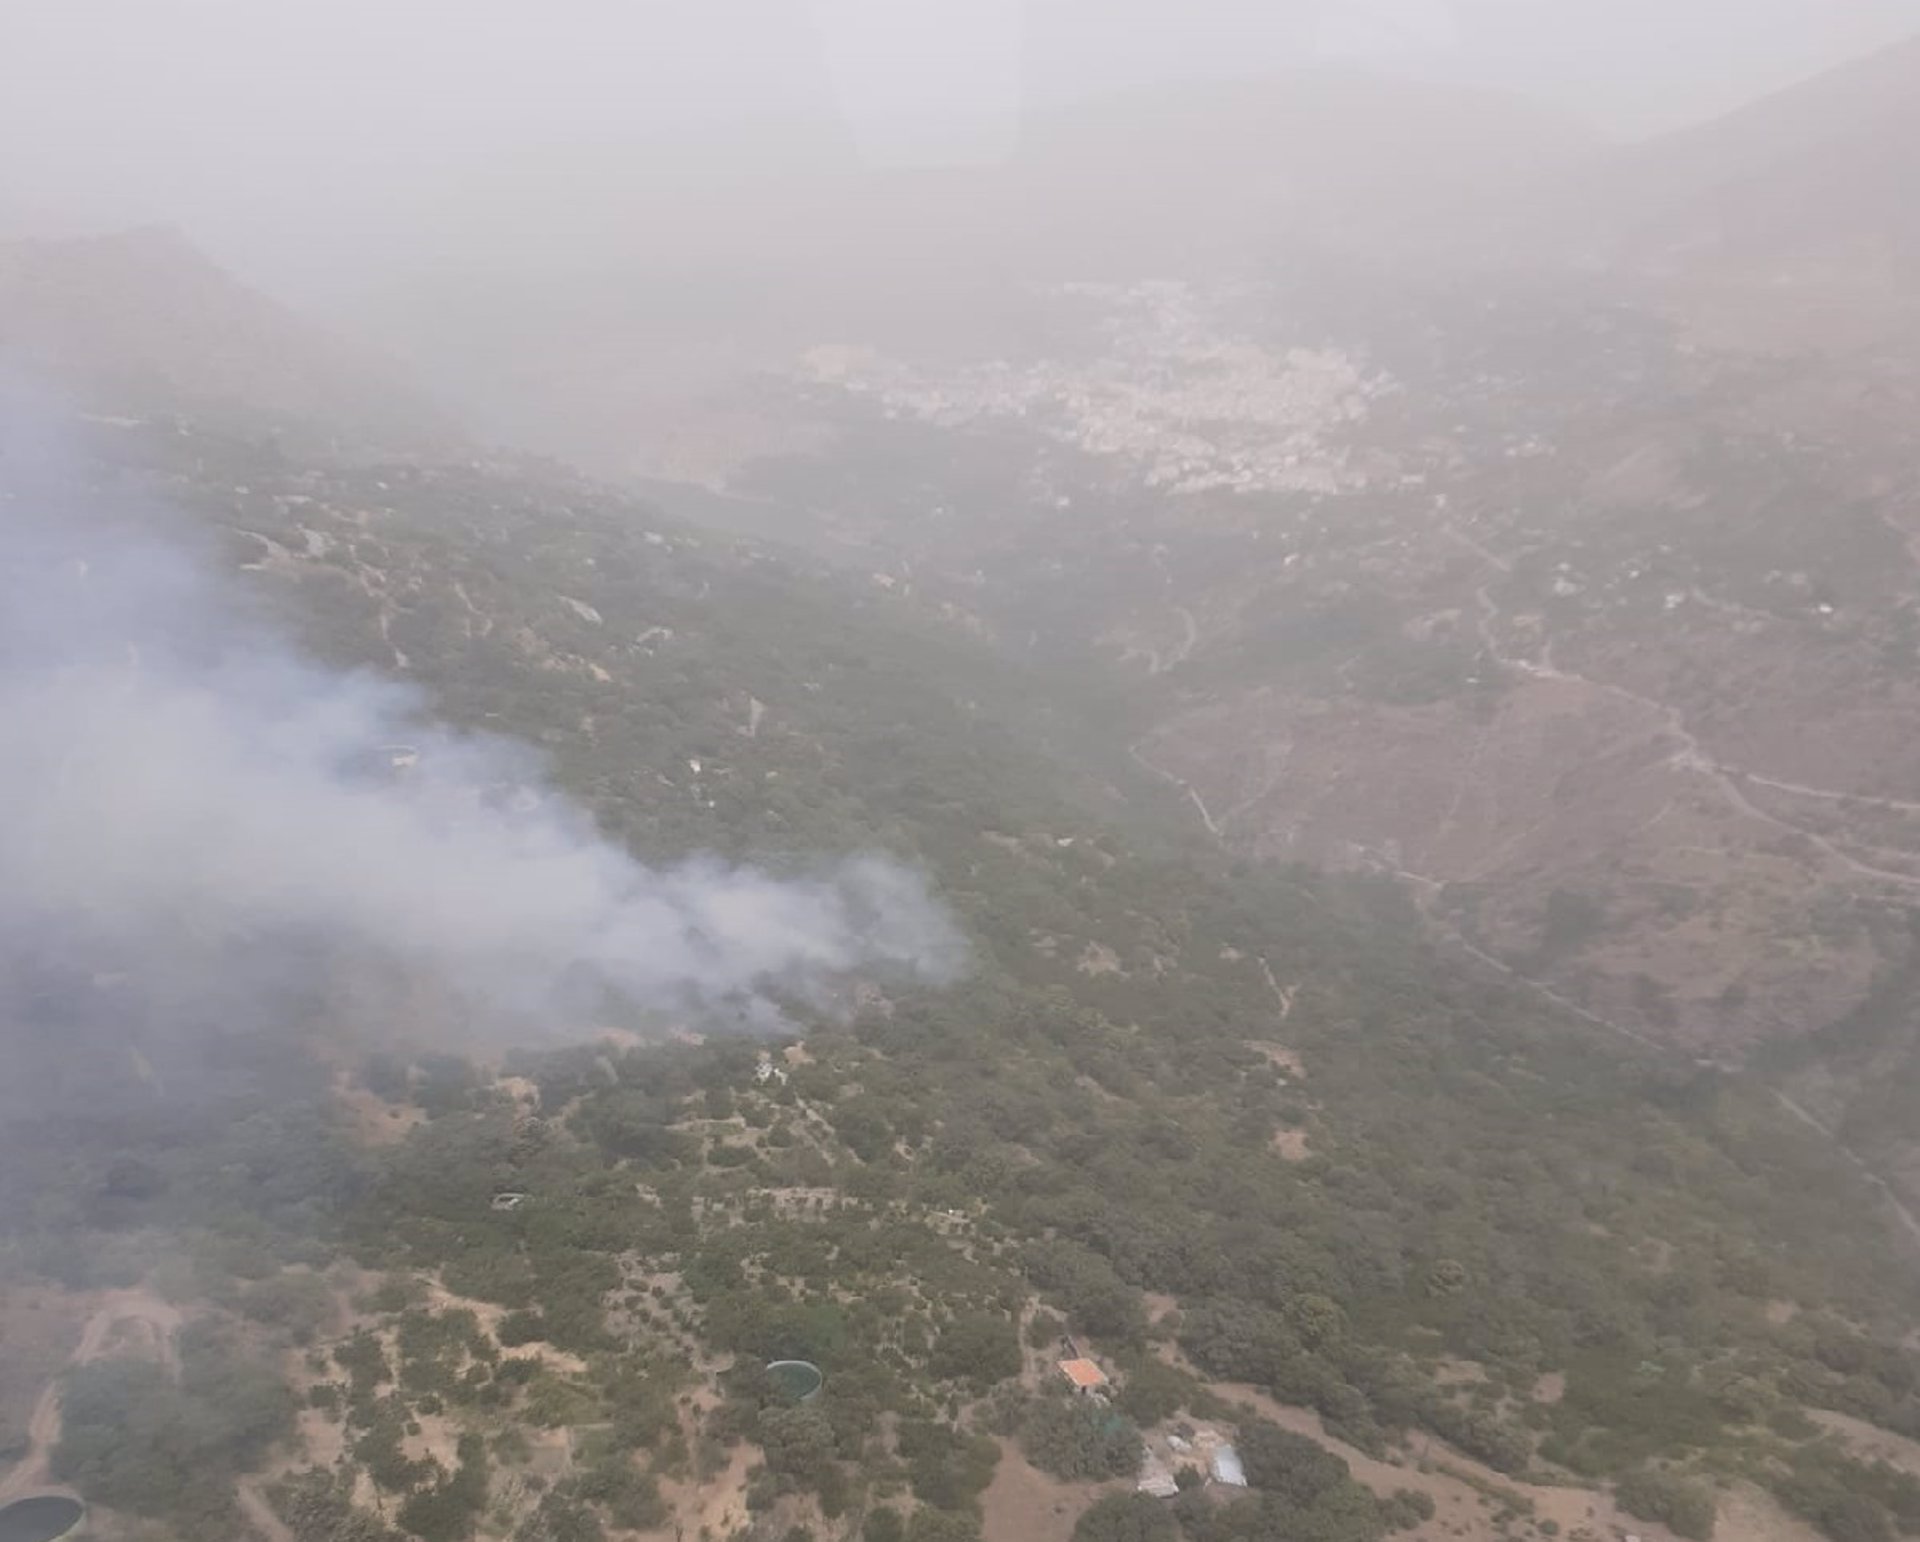 El incendio forestal en Güéjar Sierra, ya extinguido, quemó 3,5 hectáreas de matorral y arbolado